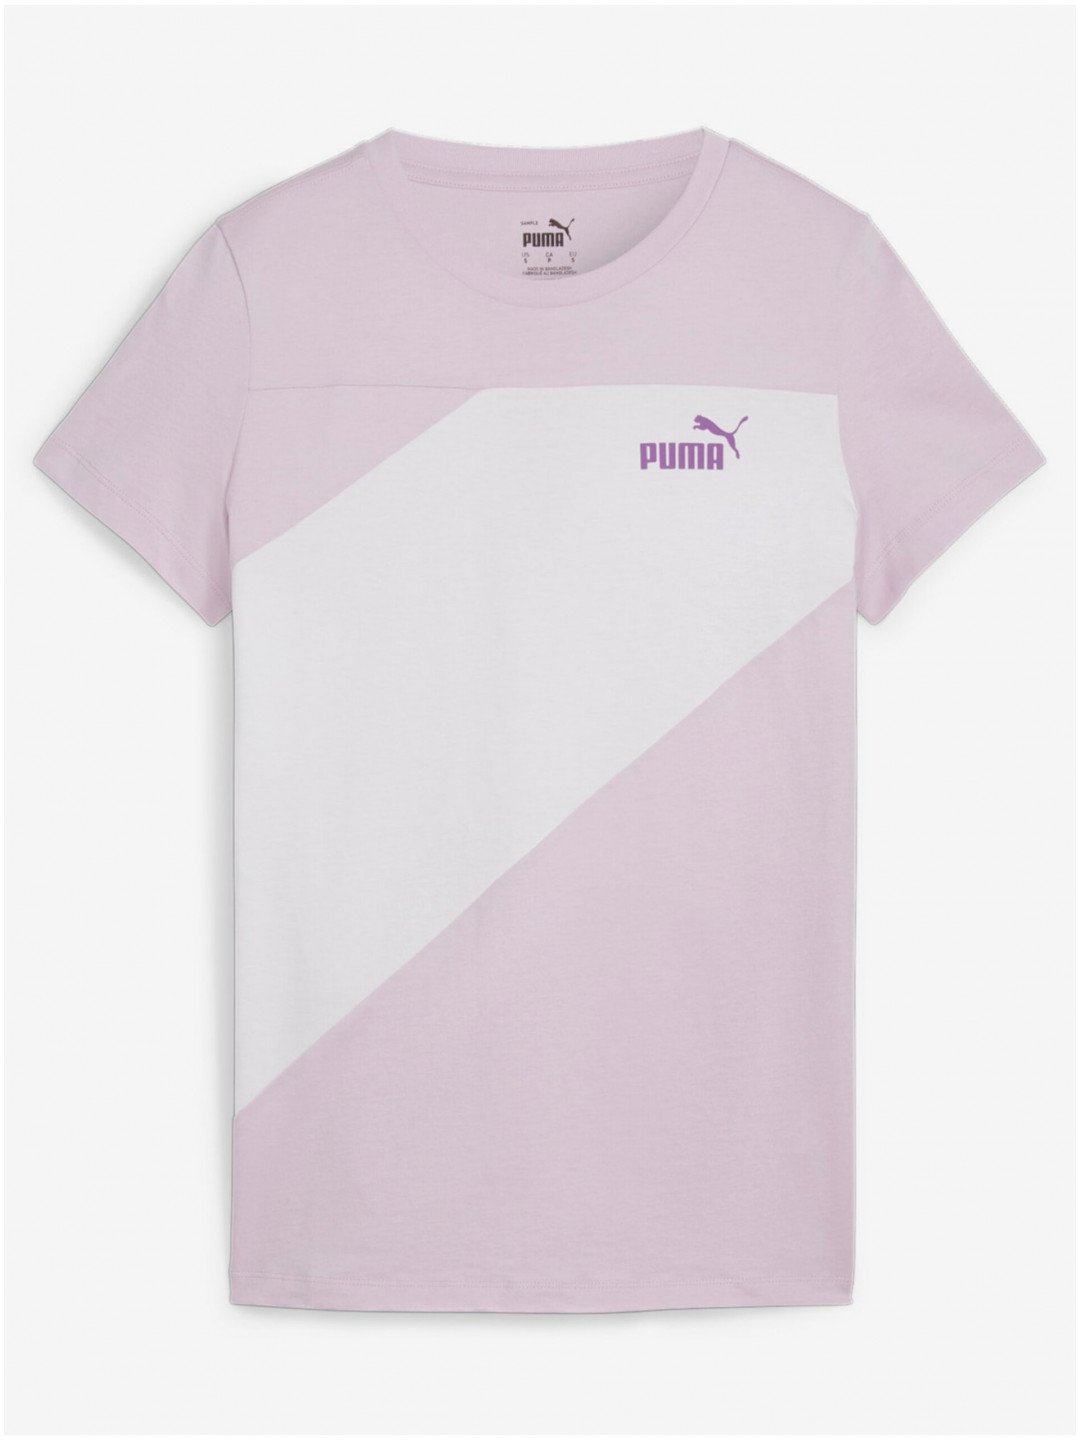 Bílo-růžové dámské tričko Puma Power Tee